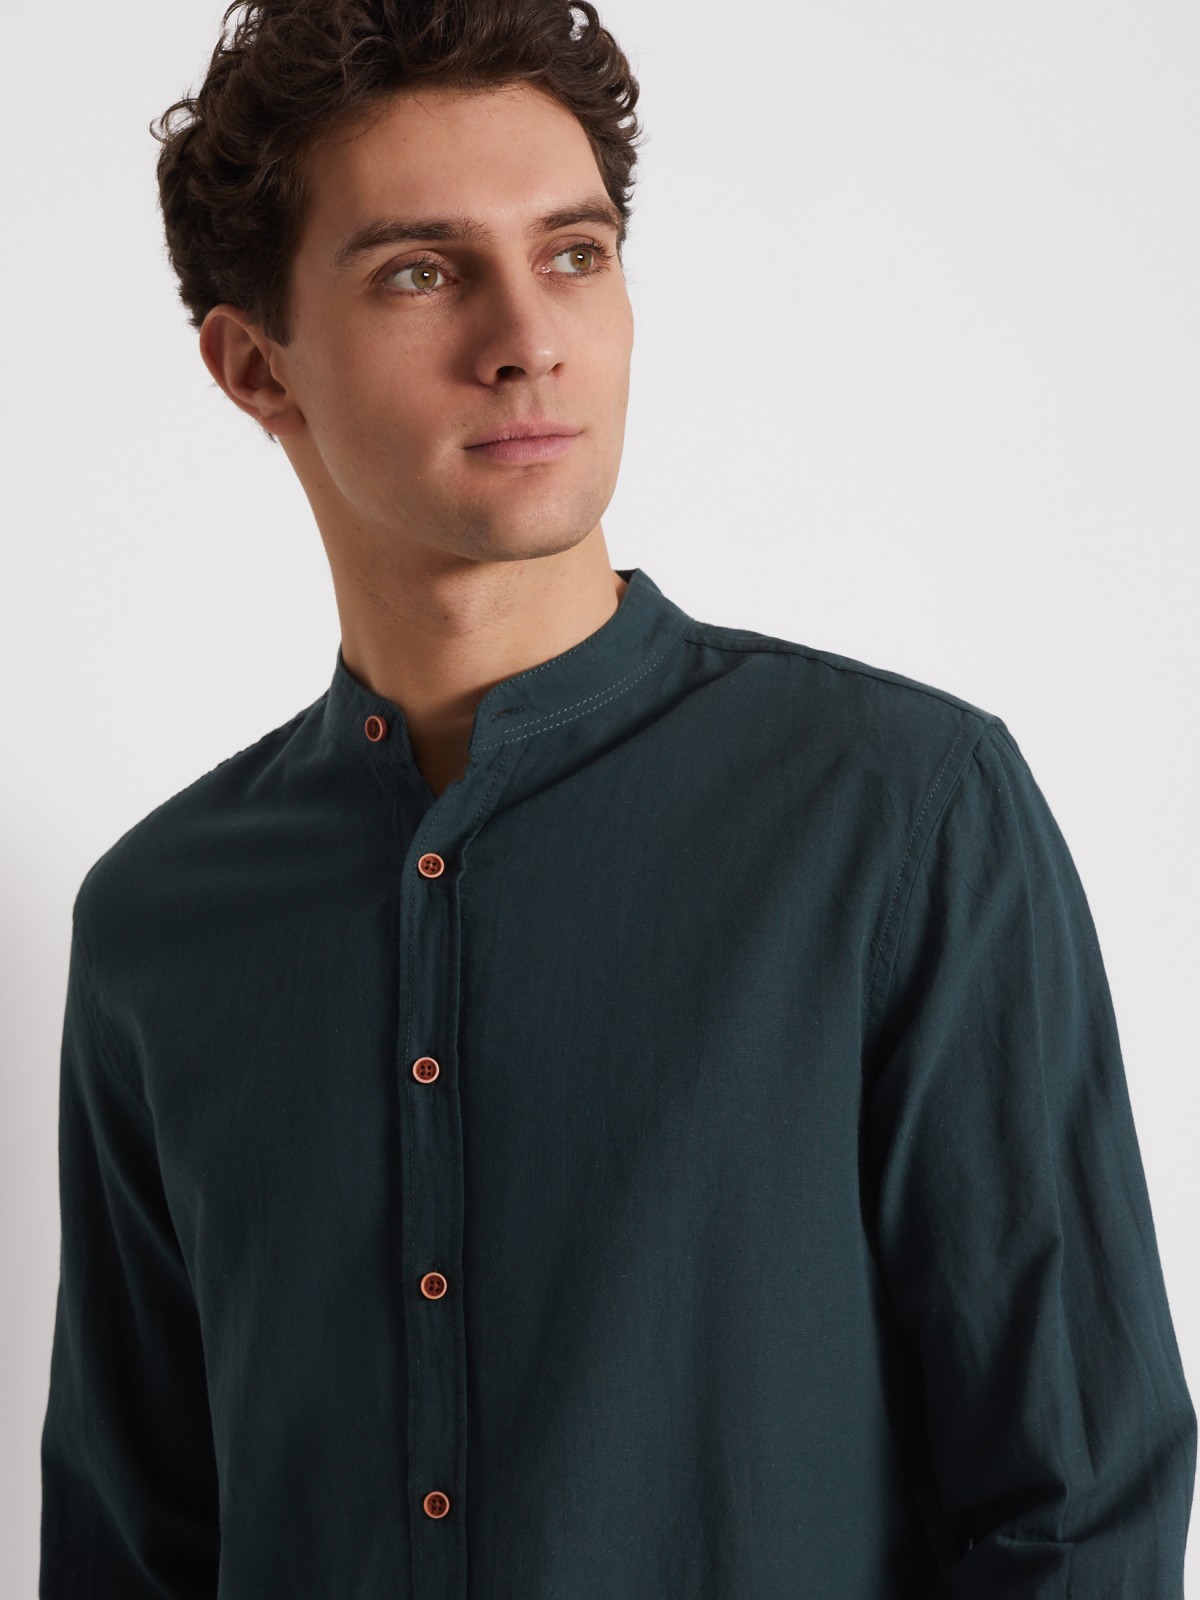 Рубашка с длинным рукавом zolla 012232159063, цвет зеленый, размер S - фото 4